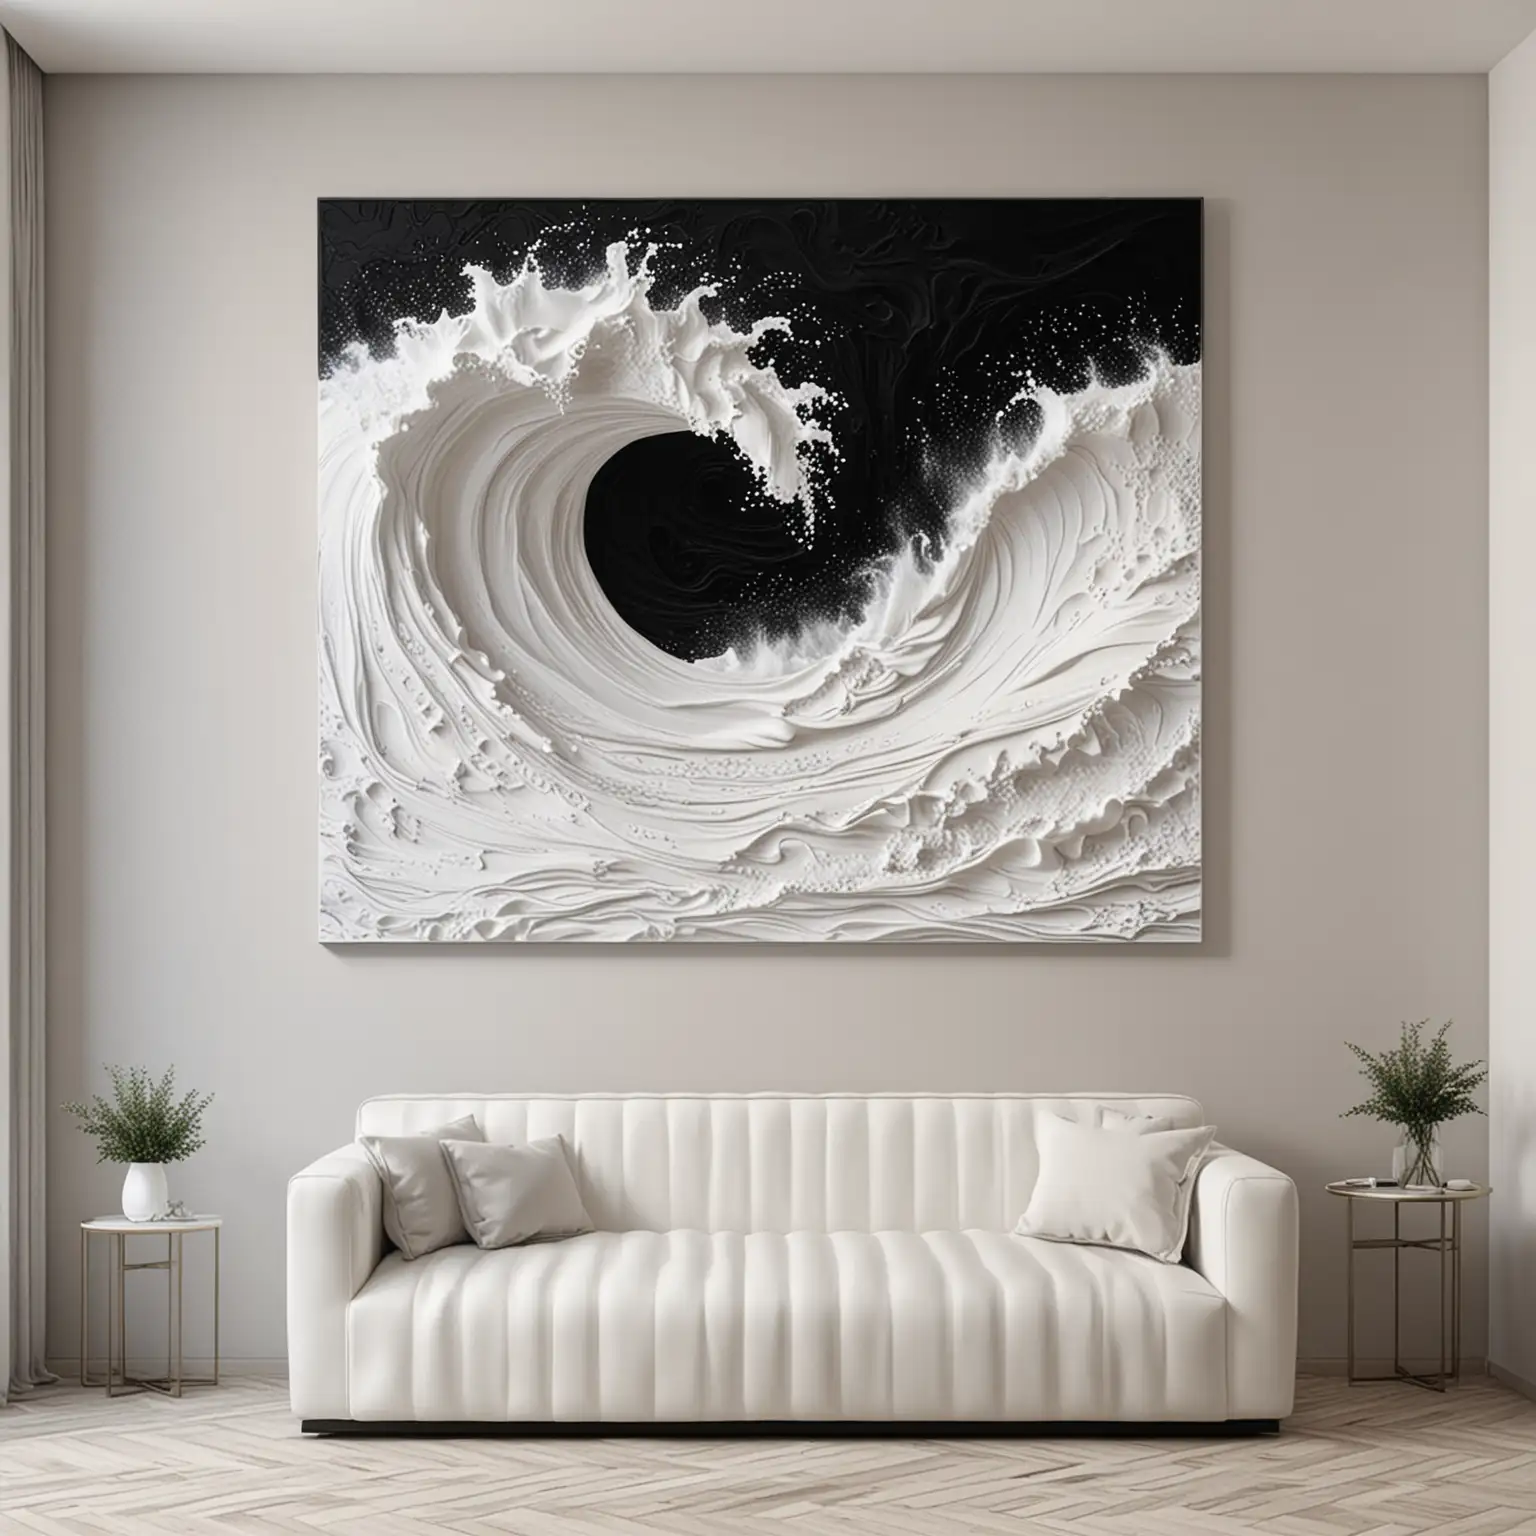 Картина черно-белая  прямоугольная в интерьере нежных цветов. Барельеф белый или черный. Абстрактная композиция волны или ткань или.